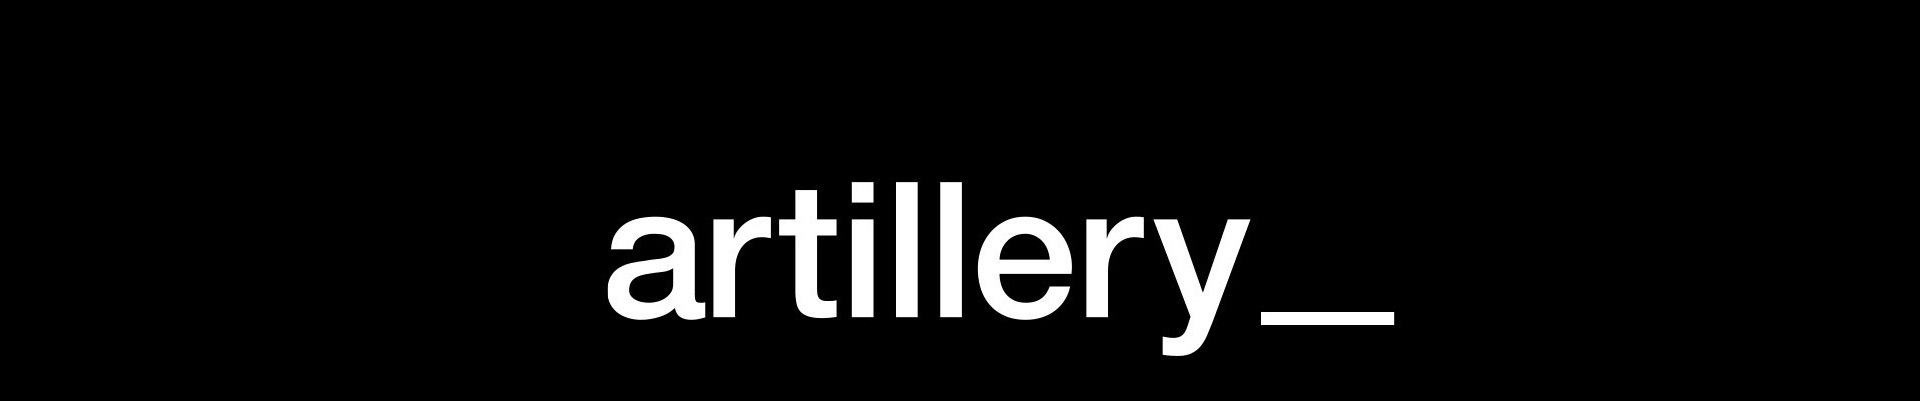 Artillery Design profil başlığı